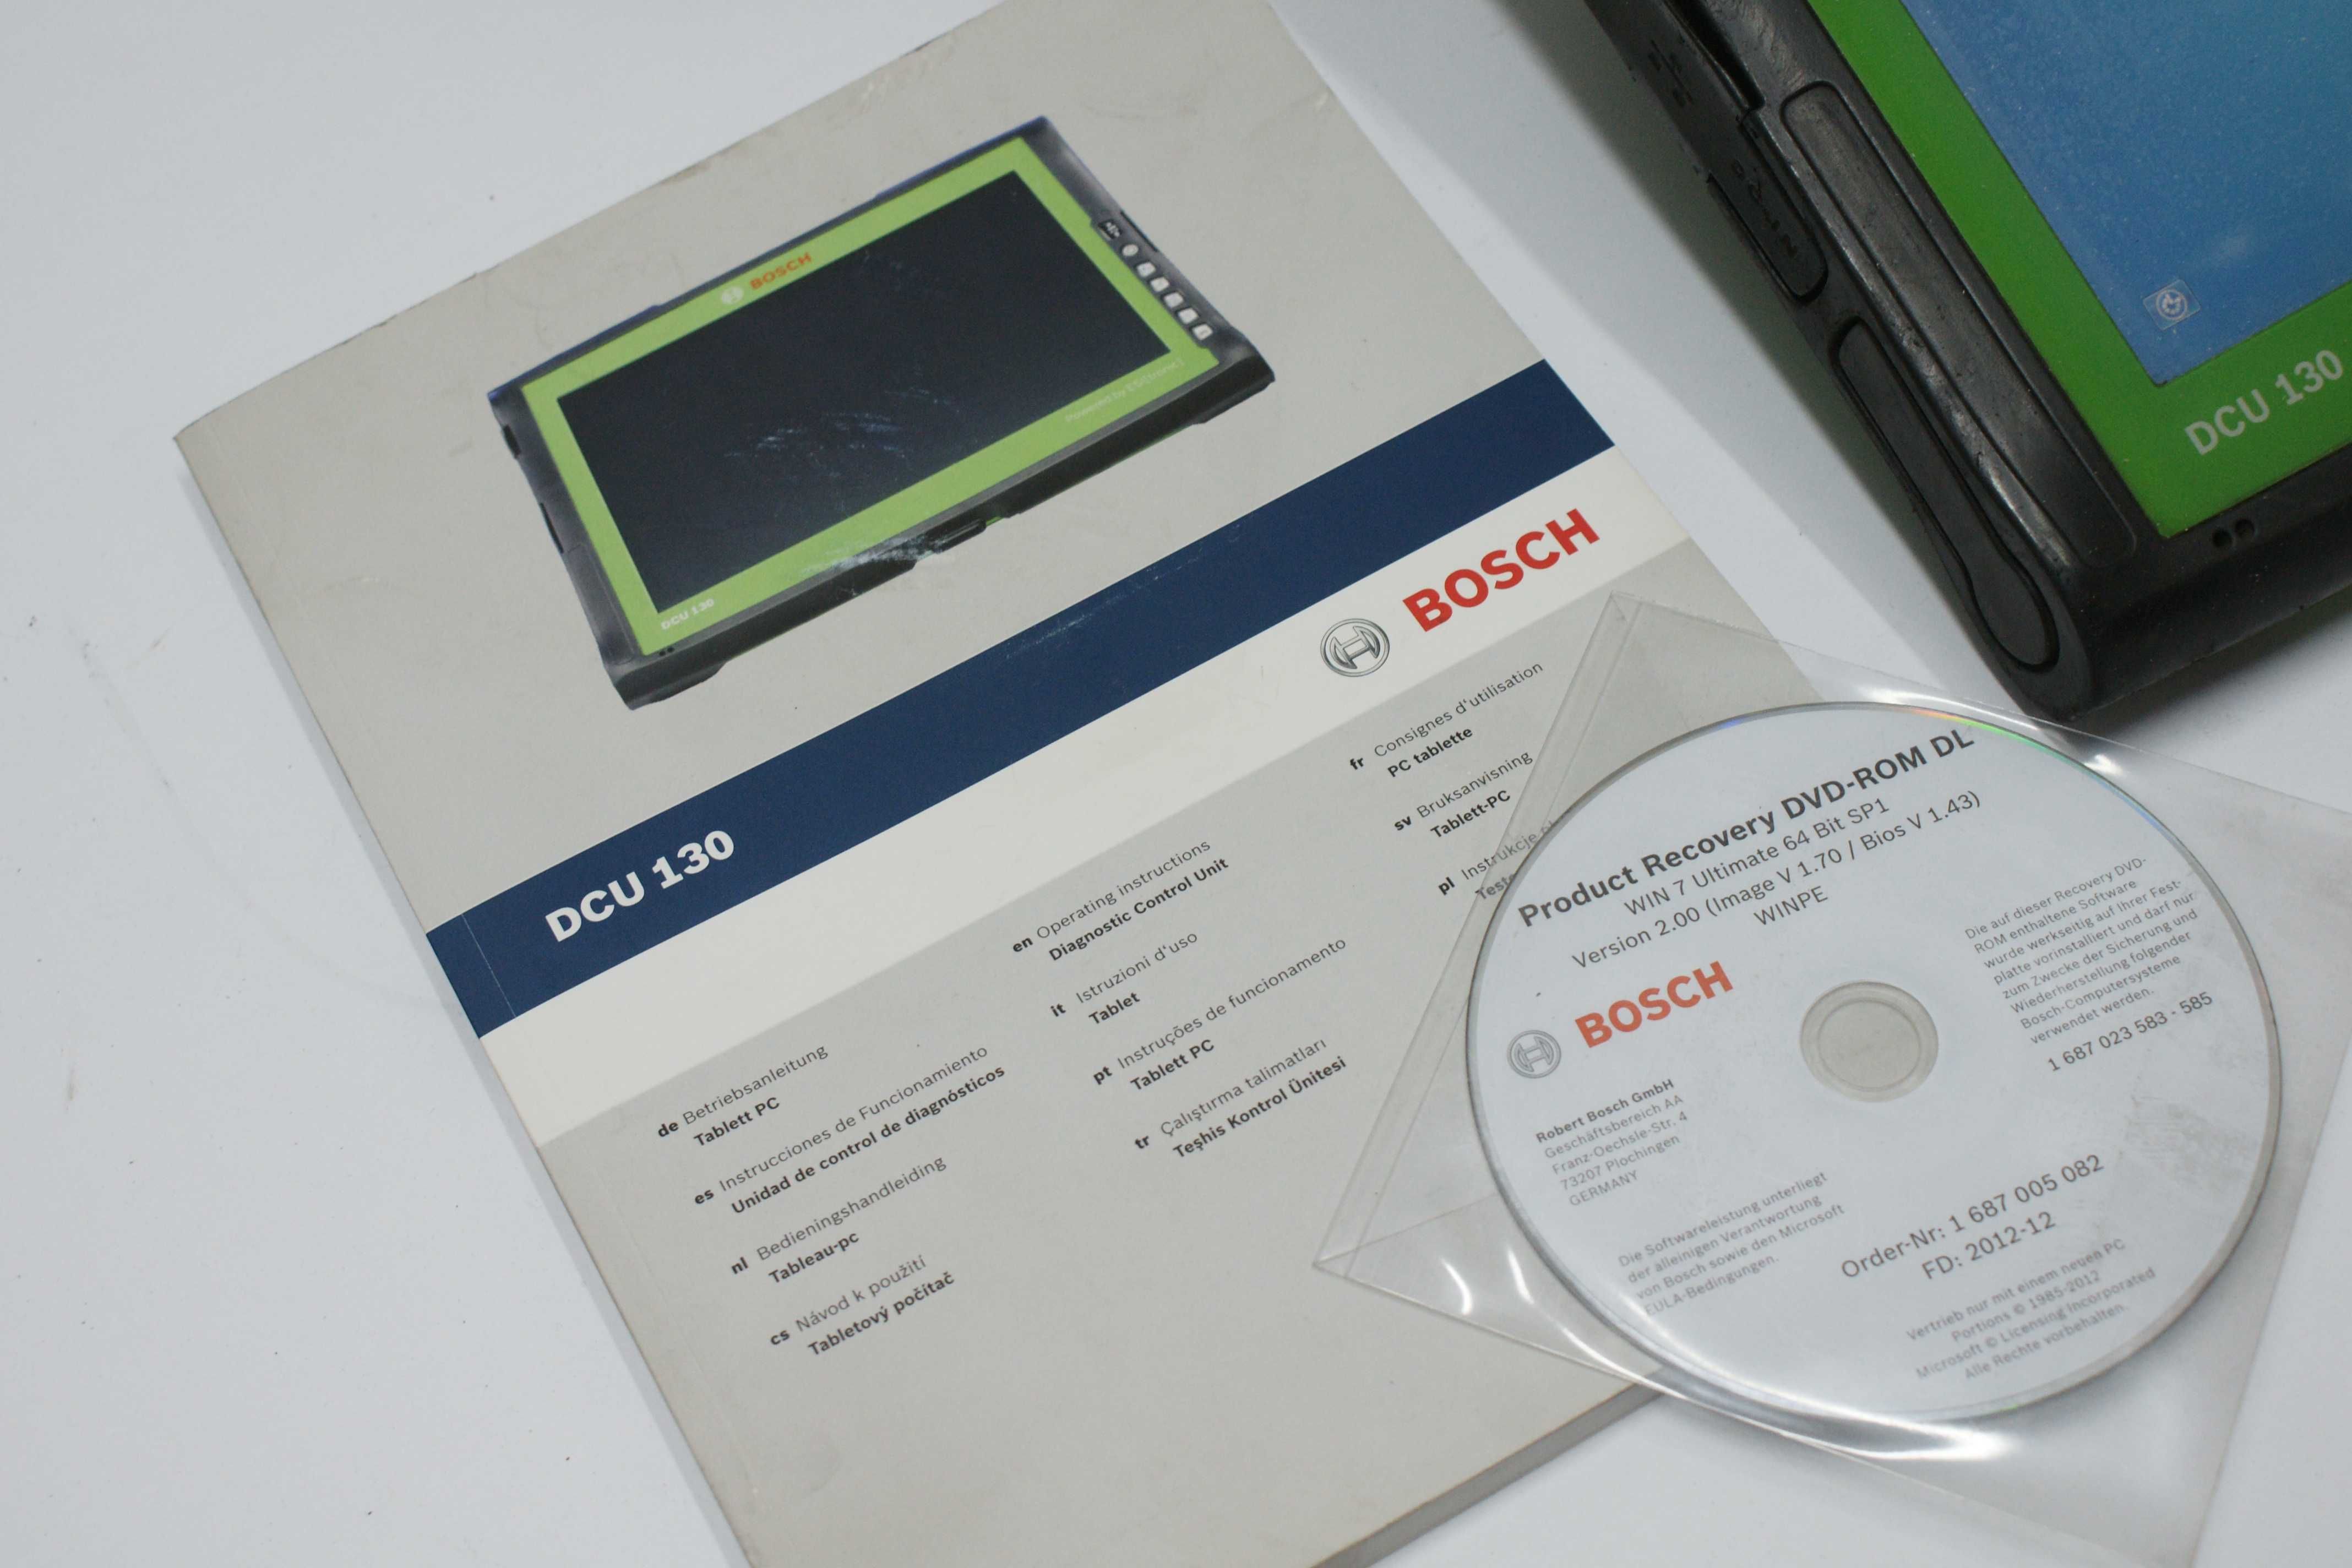 Tester diagnostyczny Bosch DCU 130 + KTS 540 zestaw